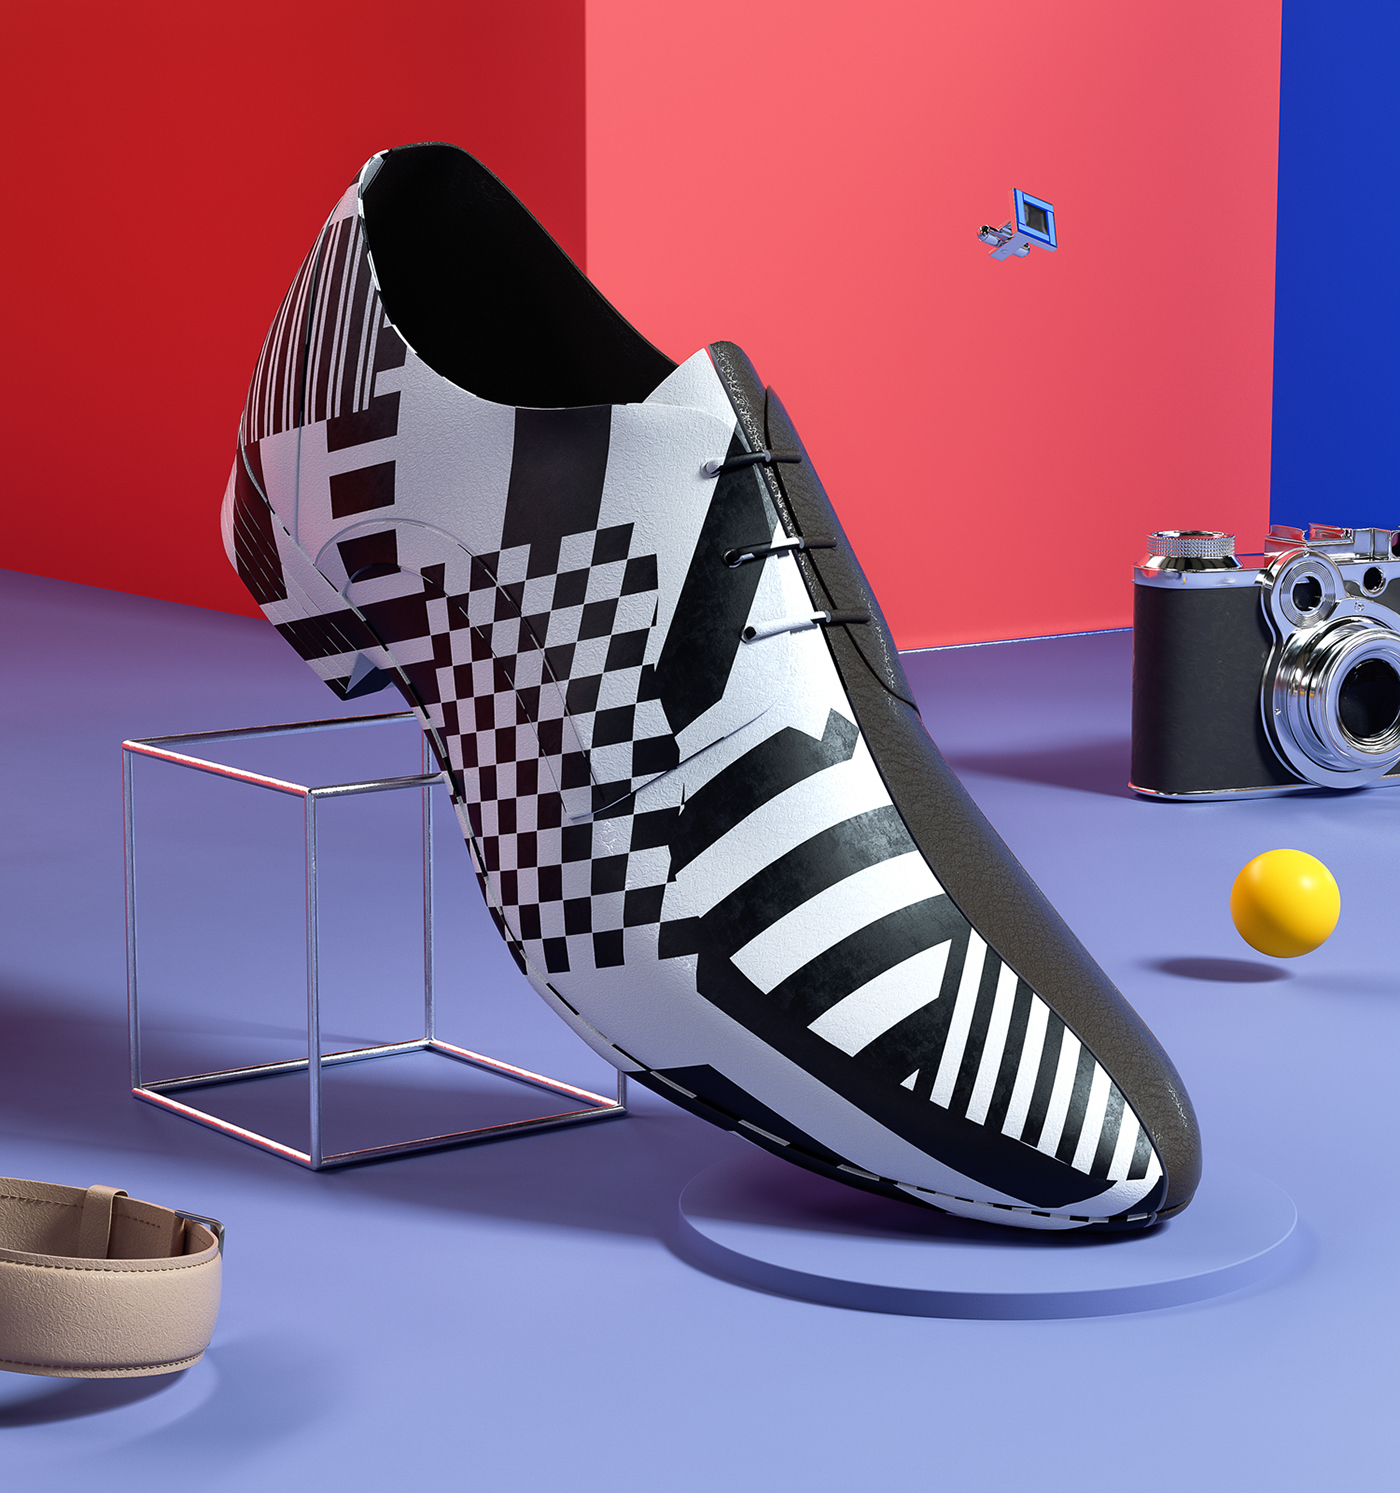 set design  Fashion  Nike adidas octane CG CGI art product pattern